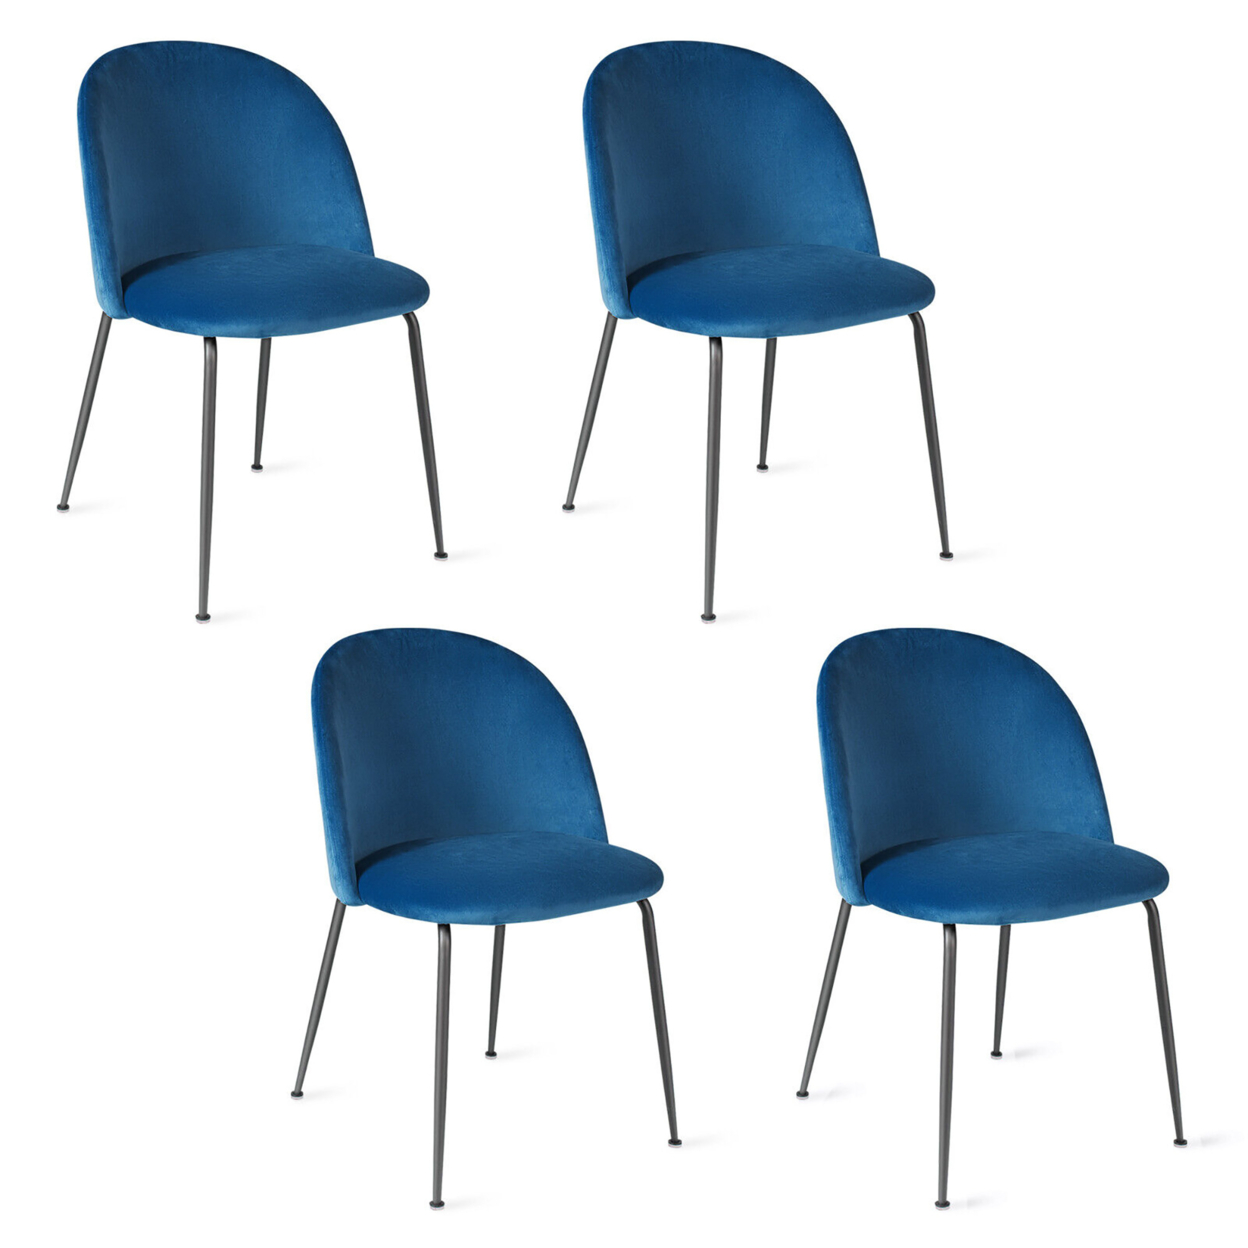 Dining Chair Set Of 4 Upholstered Velvet Chair Set W/ Metal Base For Living Room - Blue